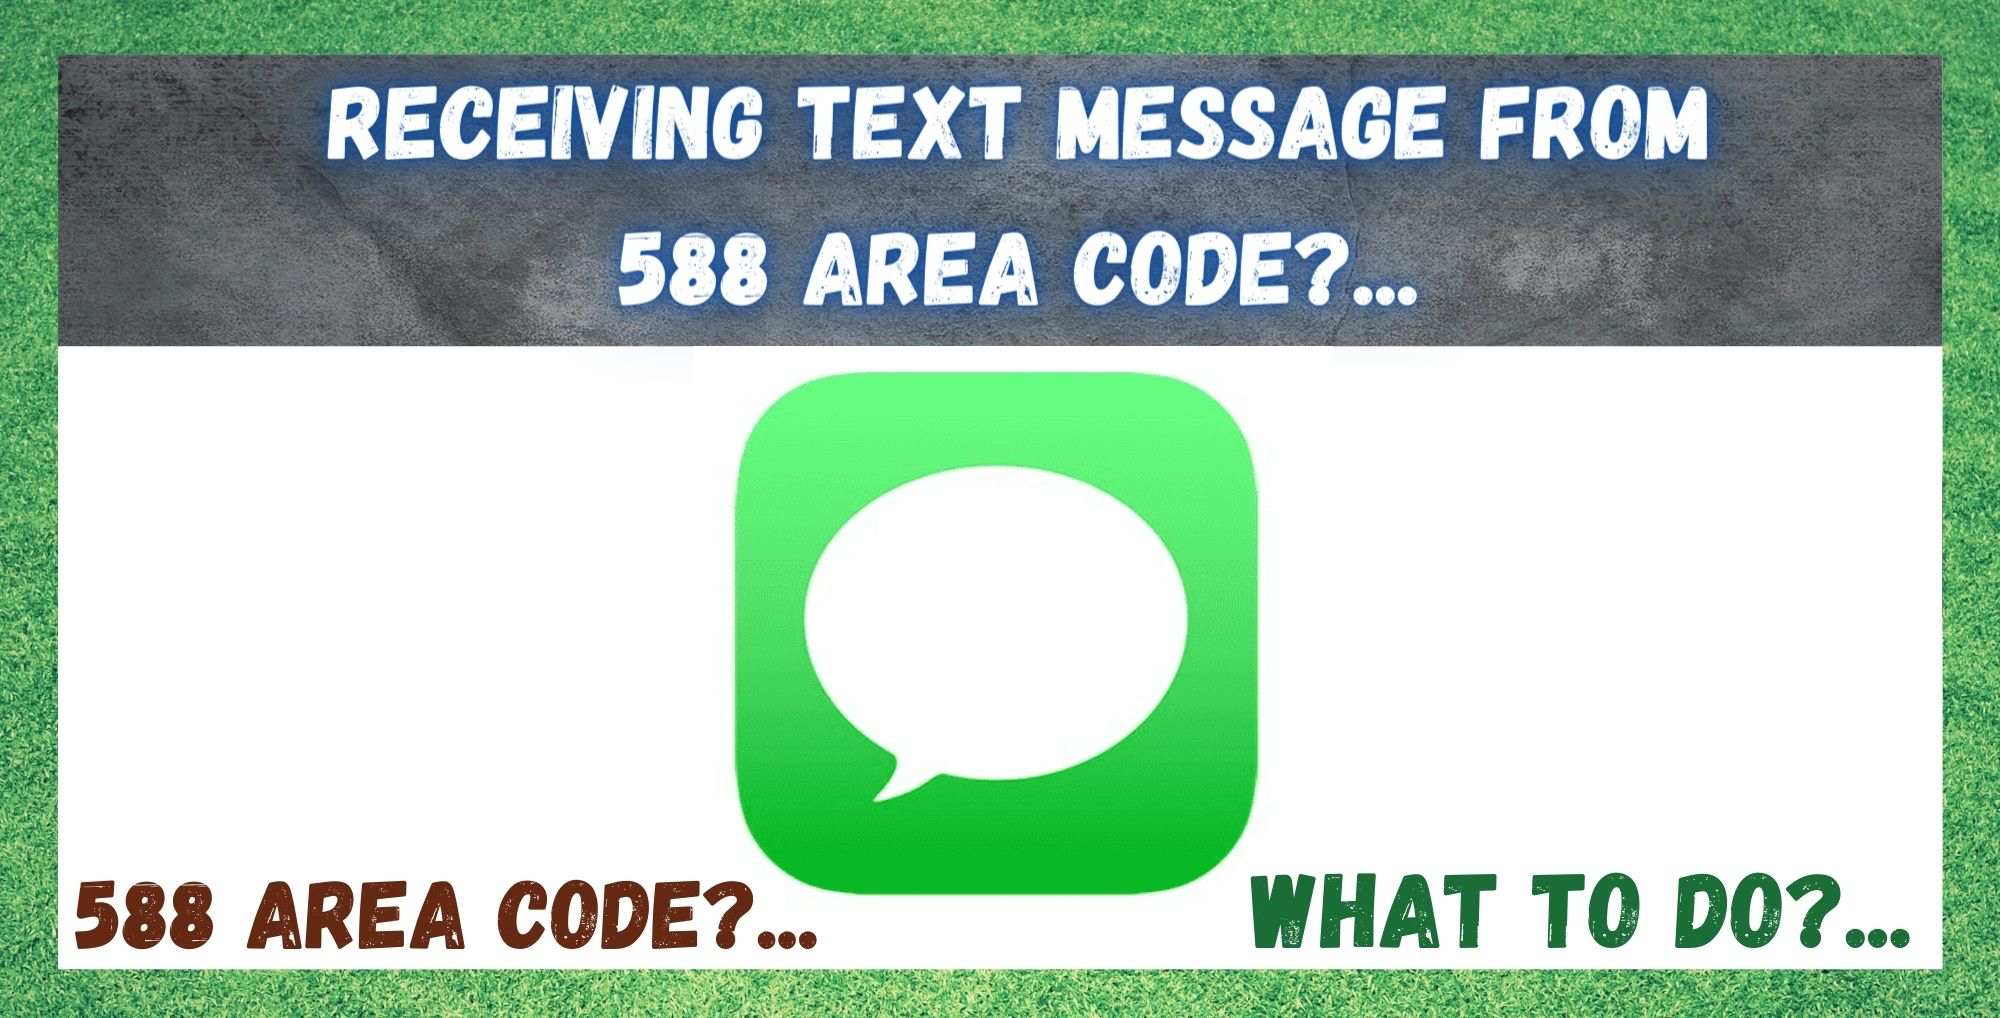 588 क्षेत्र कोड वरून मजकूर संदेश प्राप्त करणे